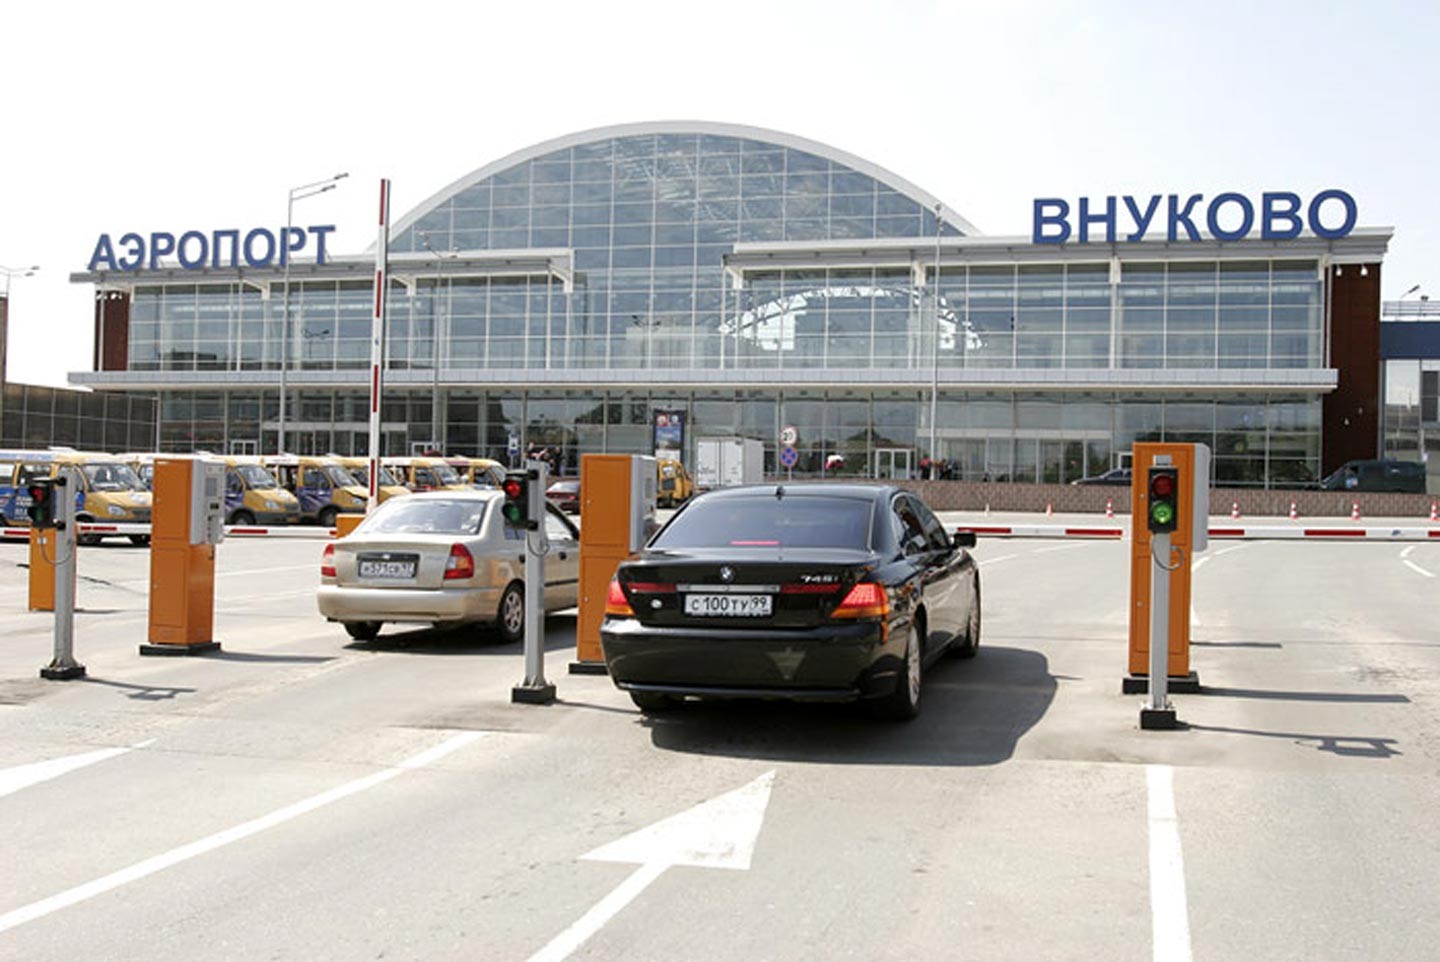 терминал а аэропорт внуково